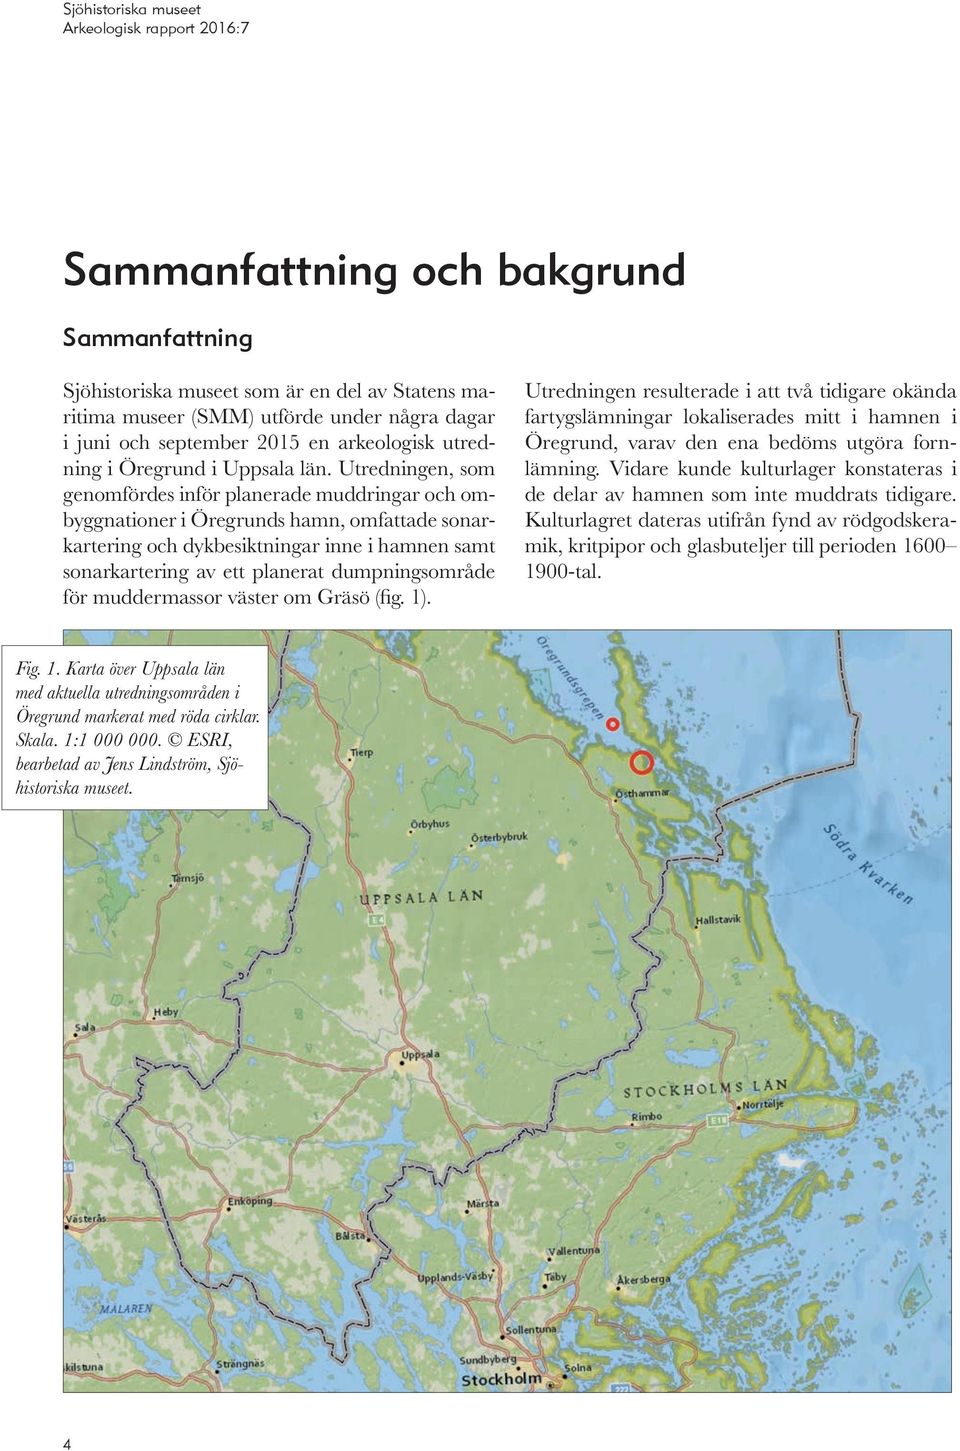 Utredningen, som genomfördes inför planerade muddringar och ombyggnationer i Öregrunds hamn, omfattade sonarkartering och dykbesiktningar inne i hamnen samt sonarkartering av ett planerat